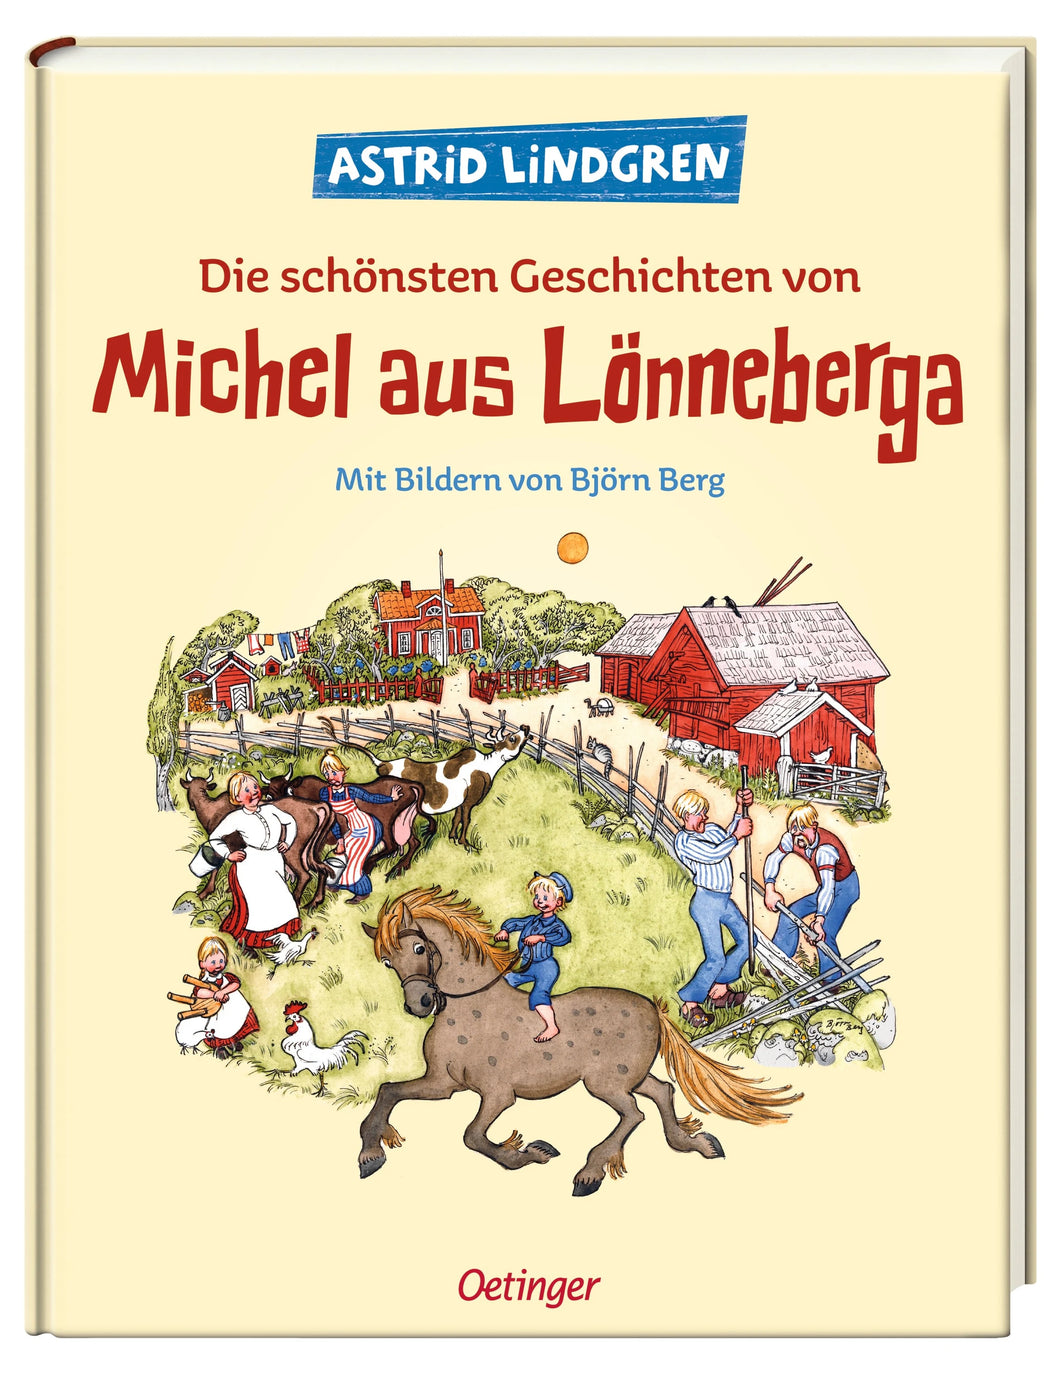 Die schönsten Geschichten von Michel aus Lönneberga // Sammelband